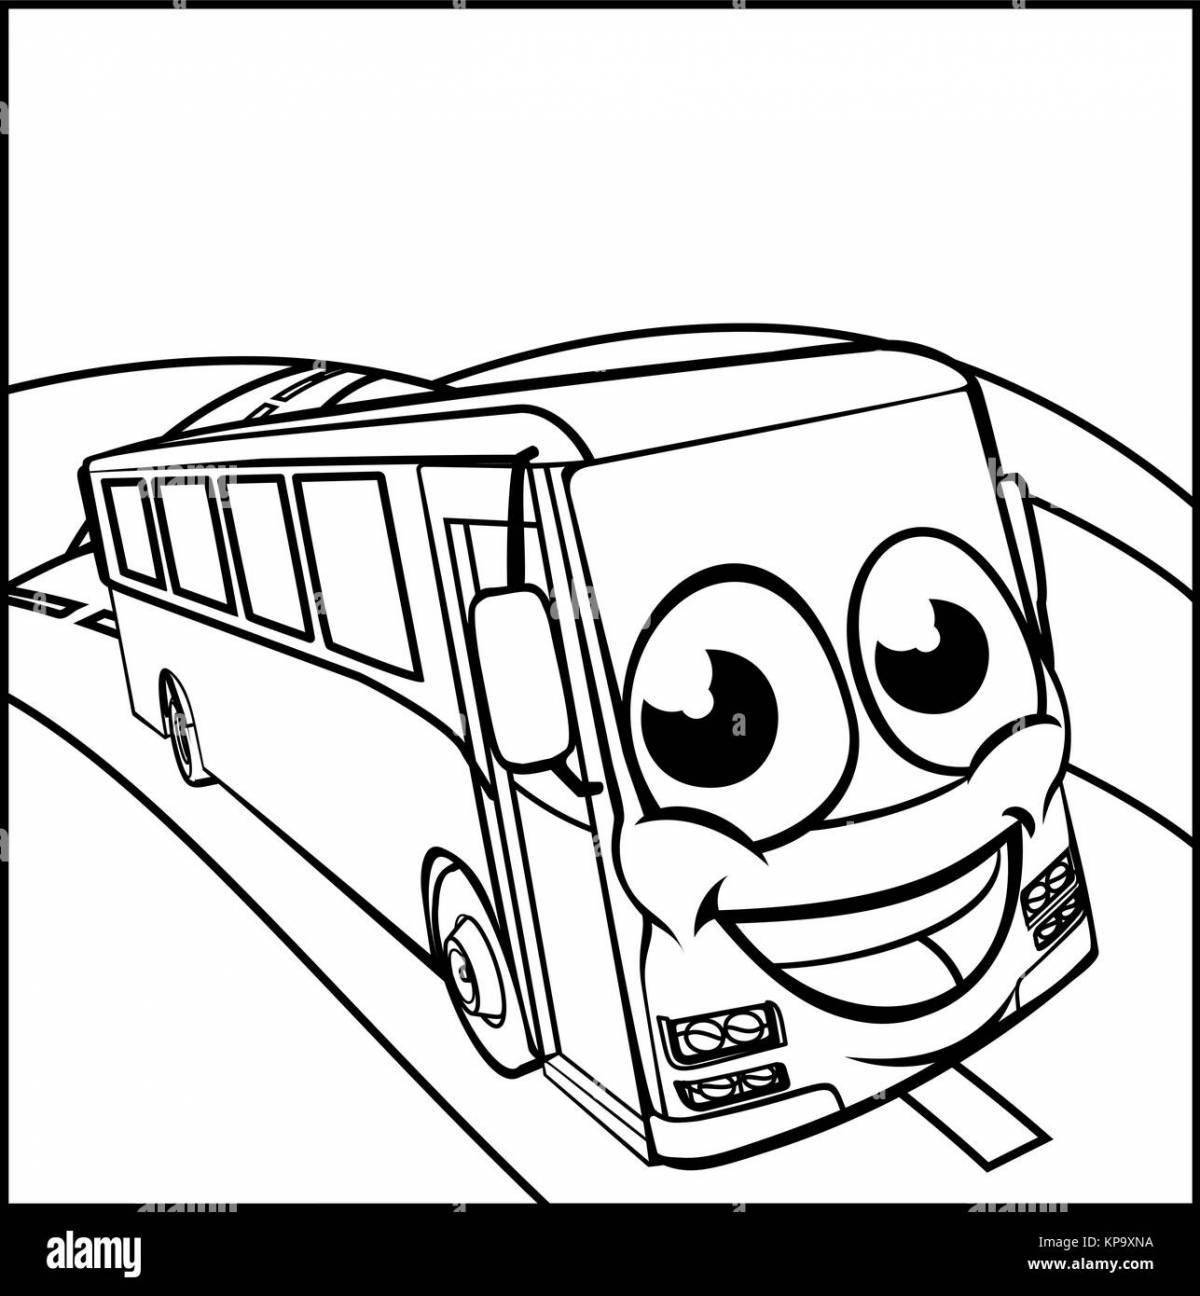 Раскраска автобус Гордон из мультика